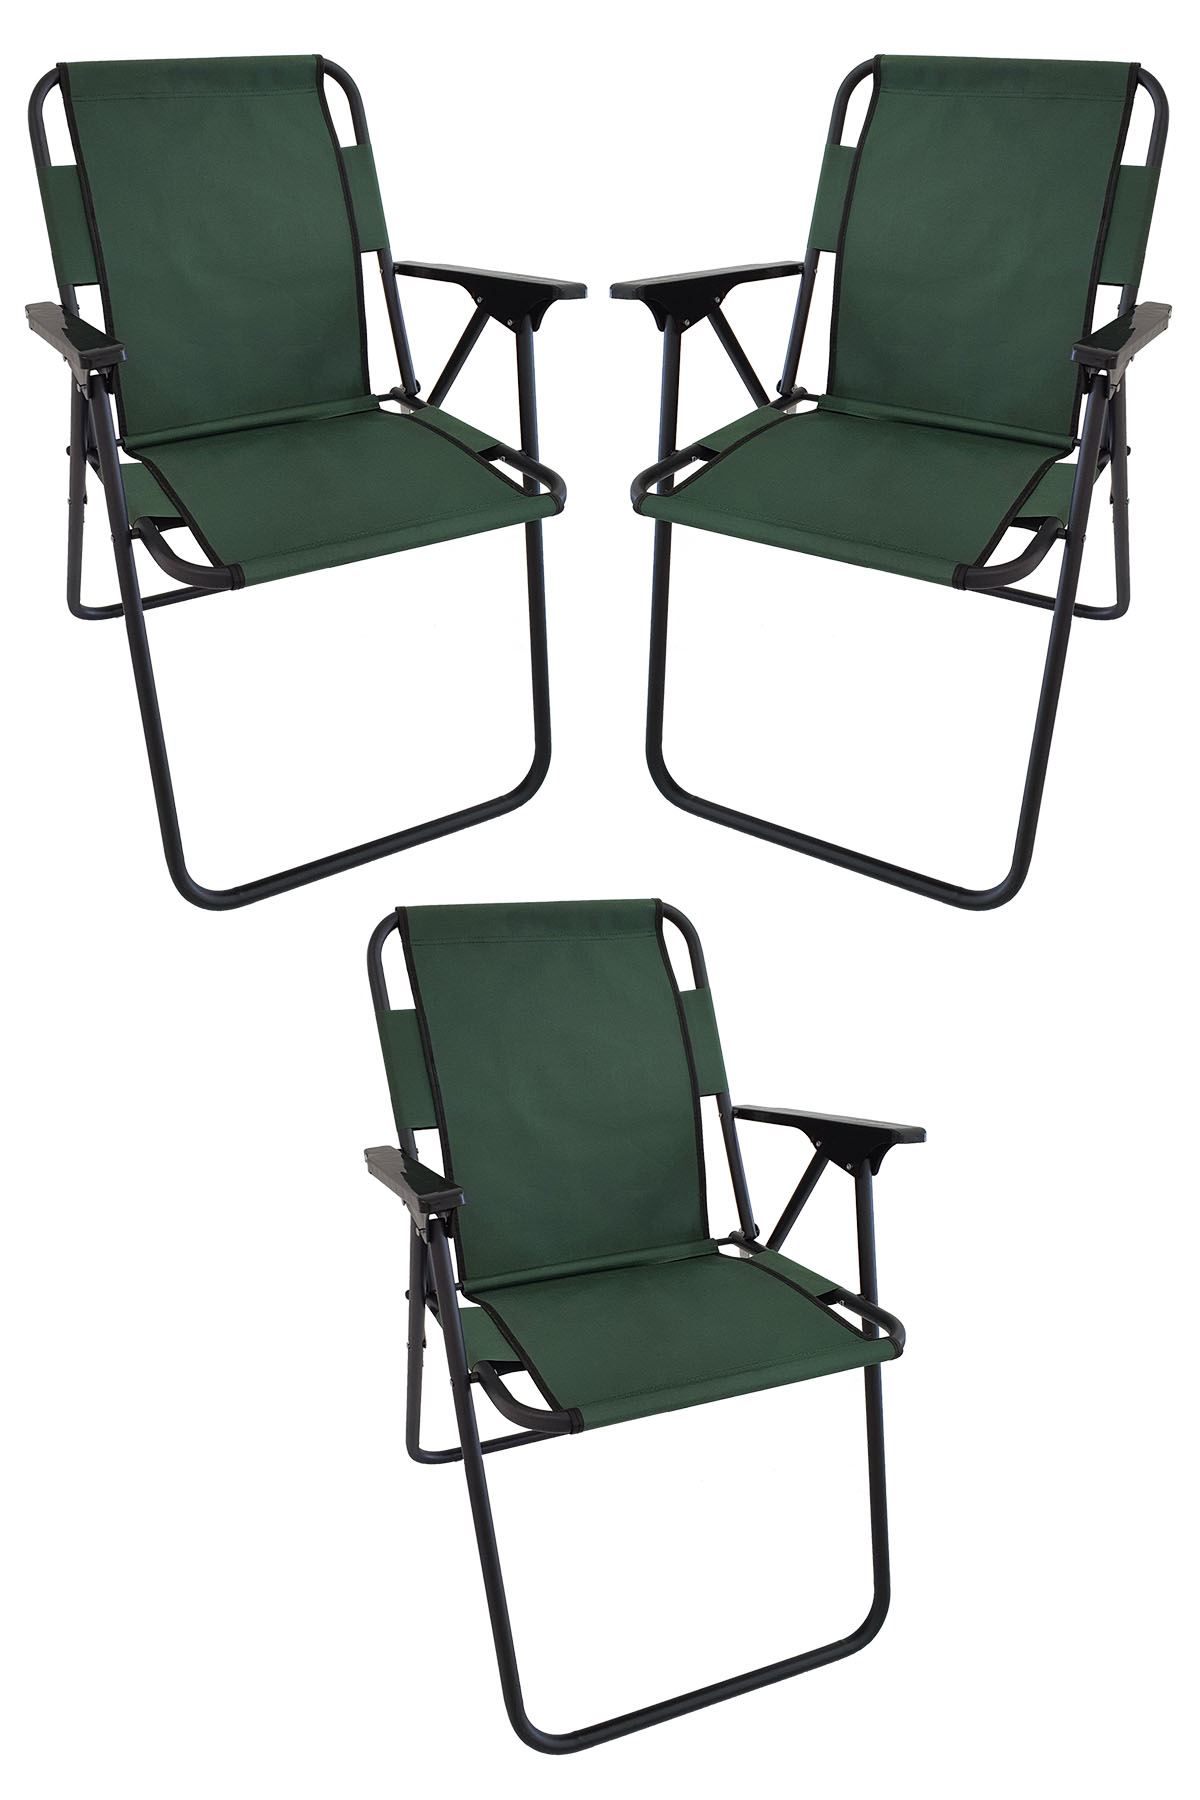 Bofigo 3 Adet Kamp Sandalyesi Katlanır Sandalye Piknik Sandalyesi Plaj Sandalyesi Yeşil